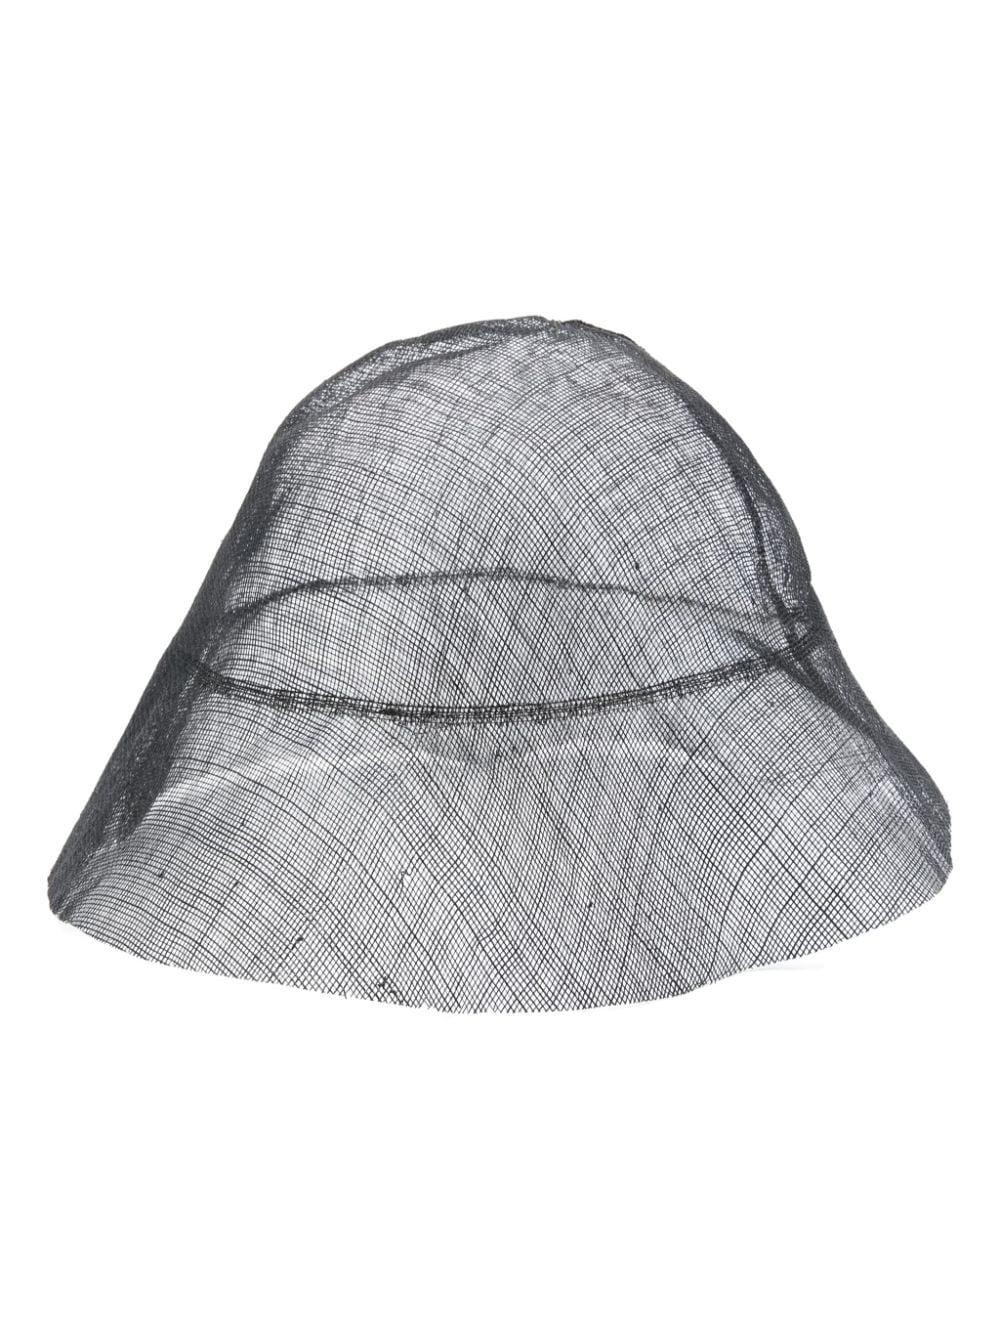 Mark Kenly Domino Tan Mesh Bucket Hat in Gray